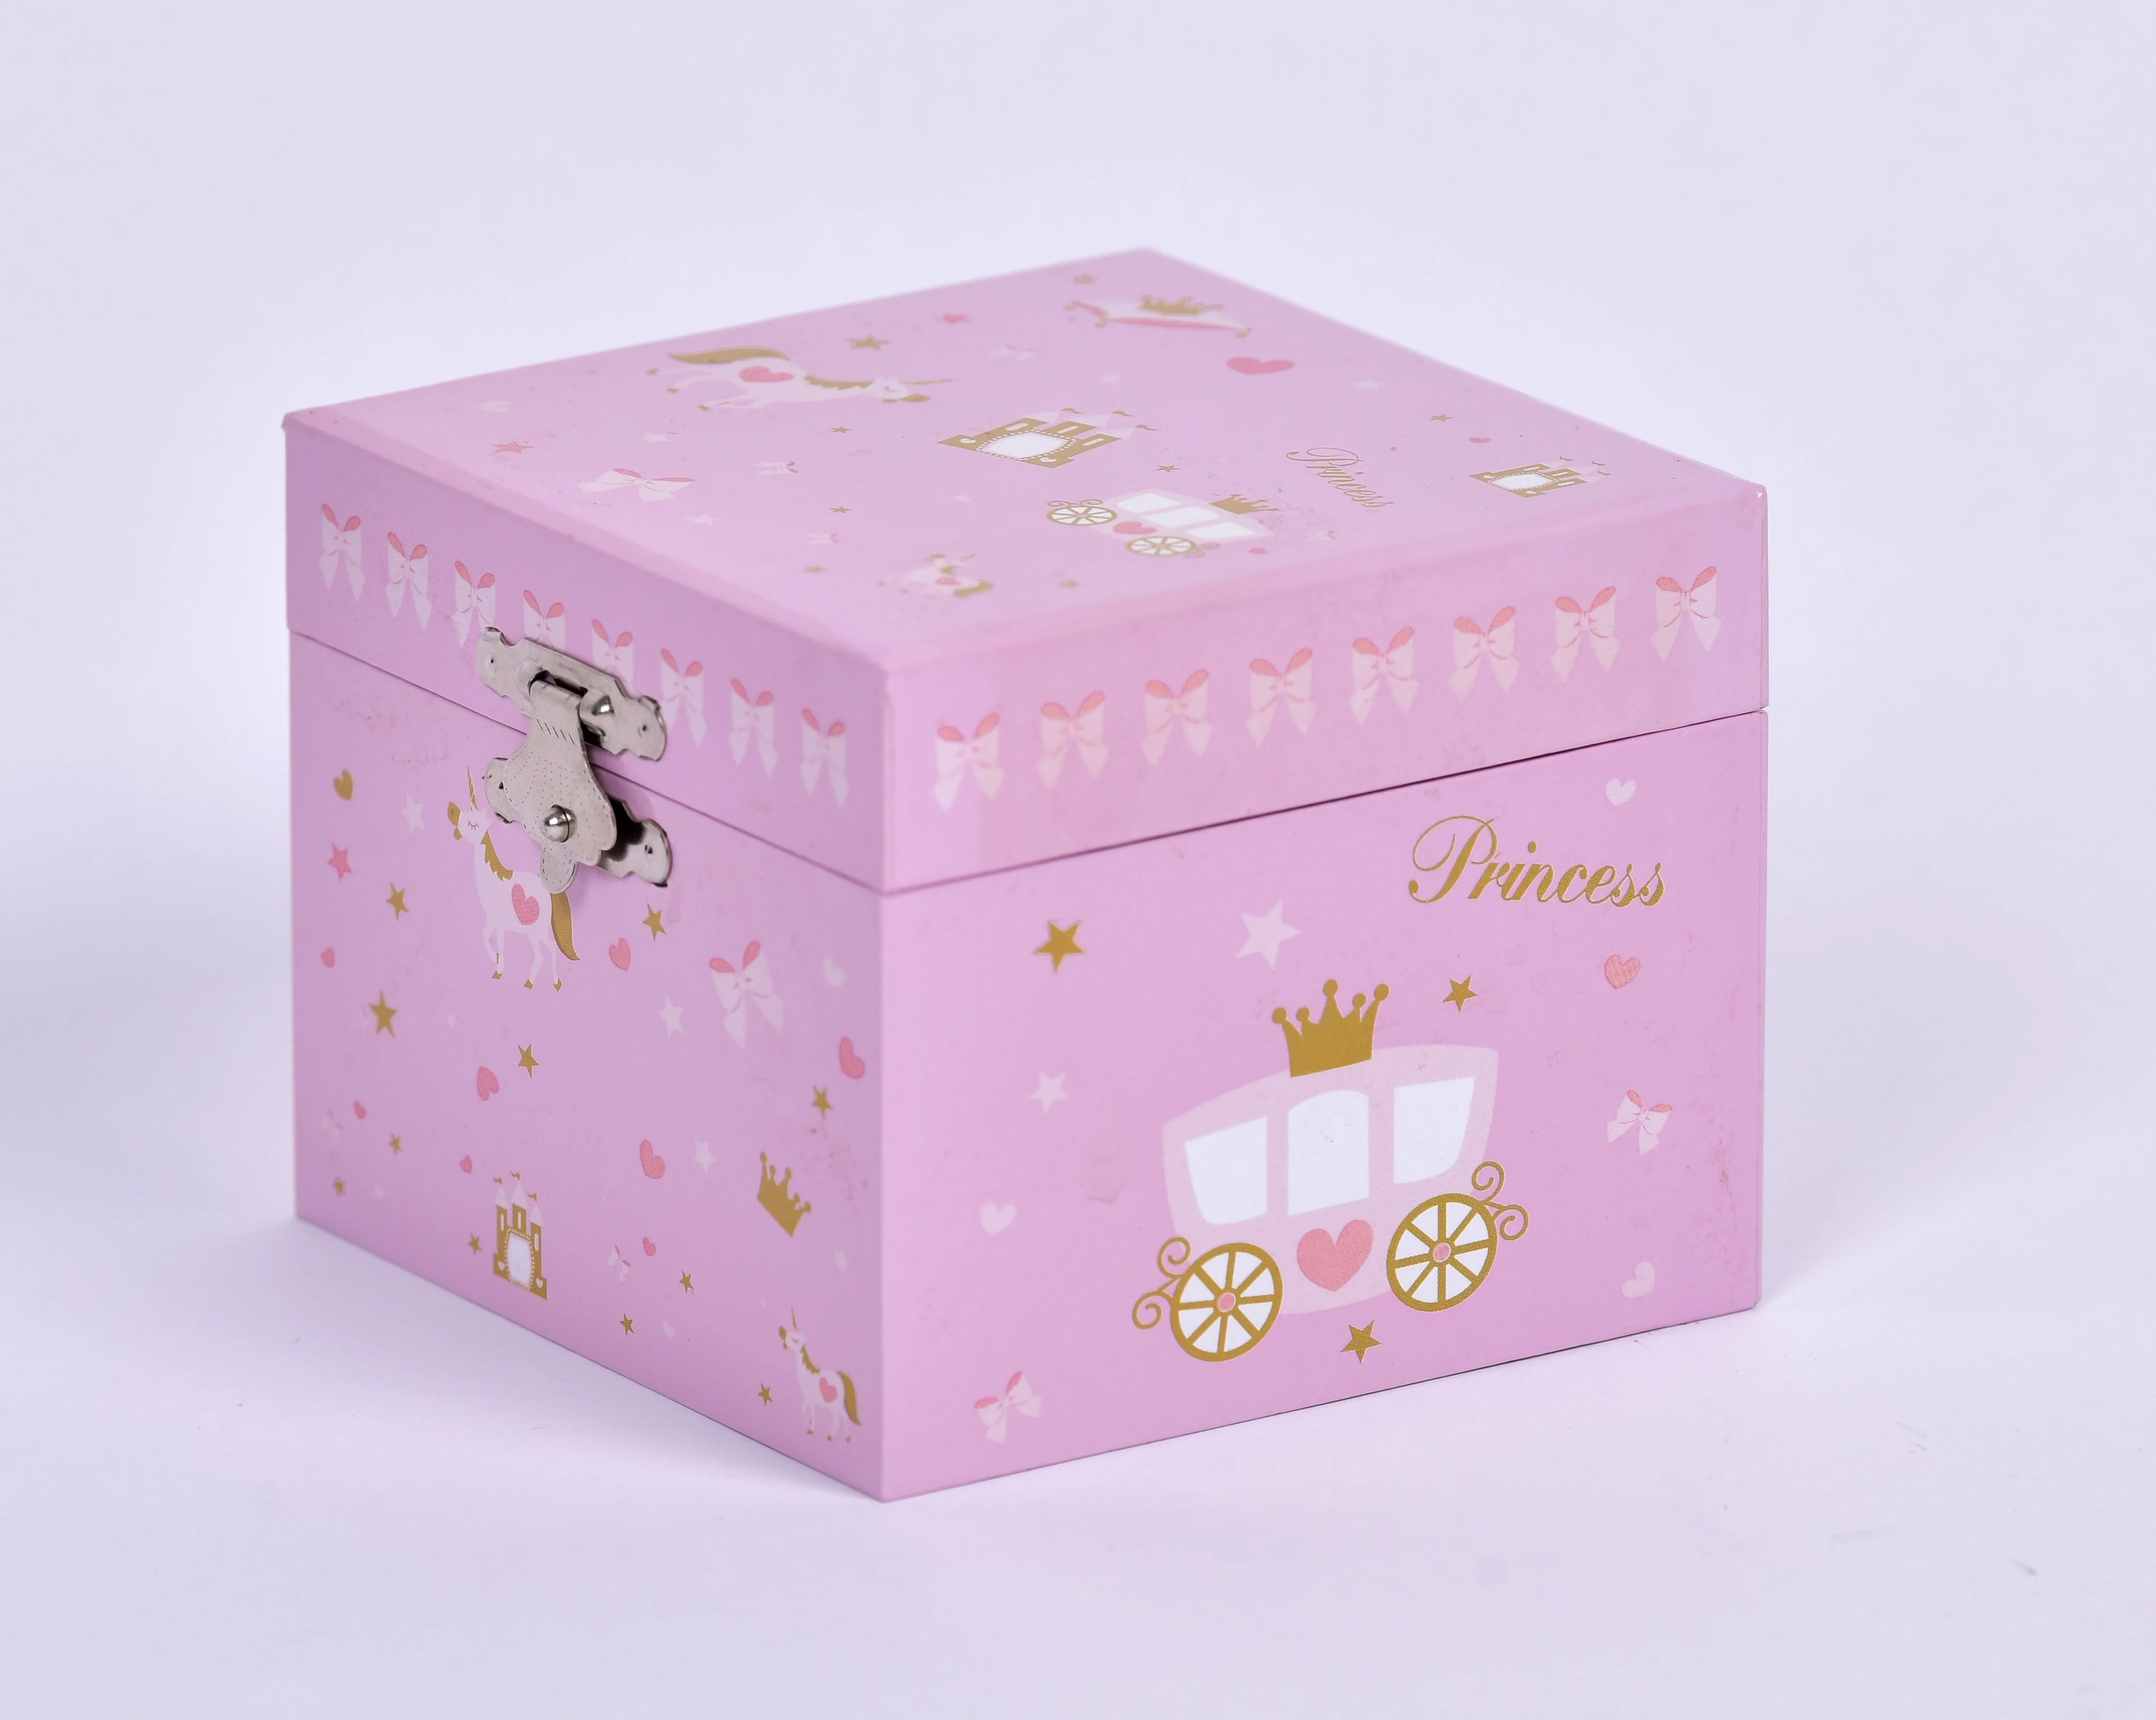 Unicorn Music Box Ballerina Jewelry Musical Box Kid Toys Hand Cranked Music Box  for Girls & Boys Gift